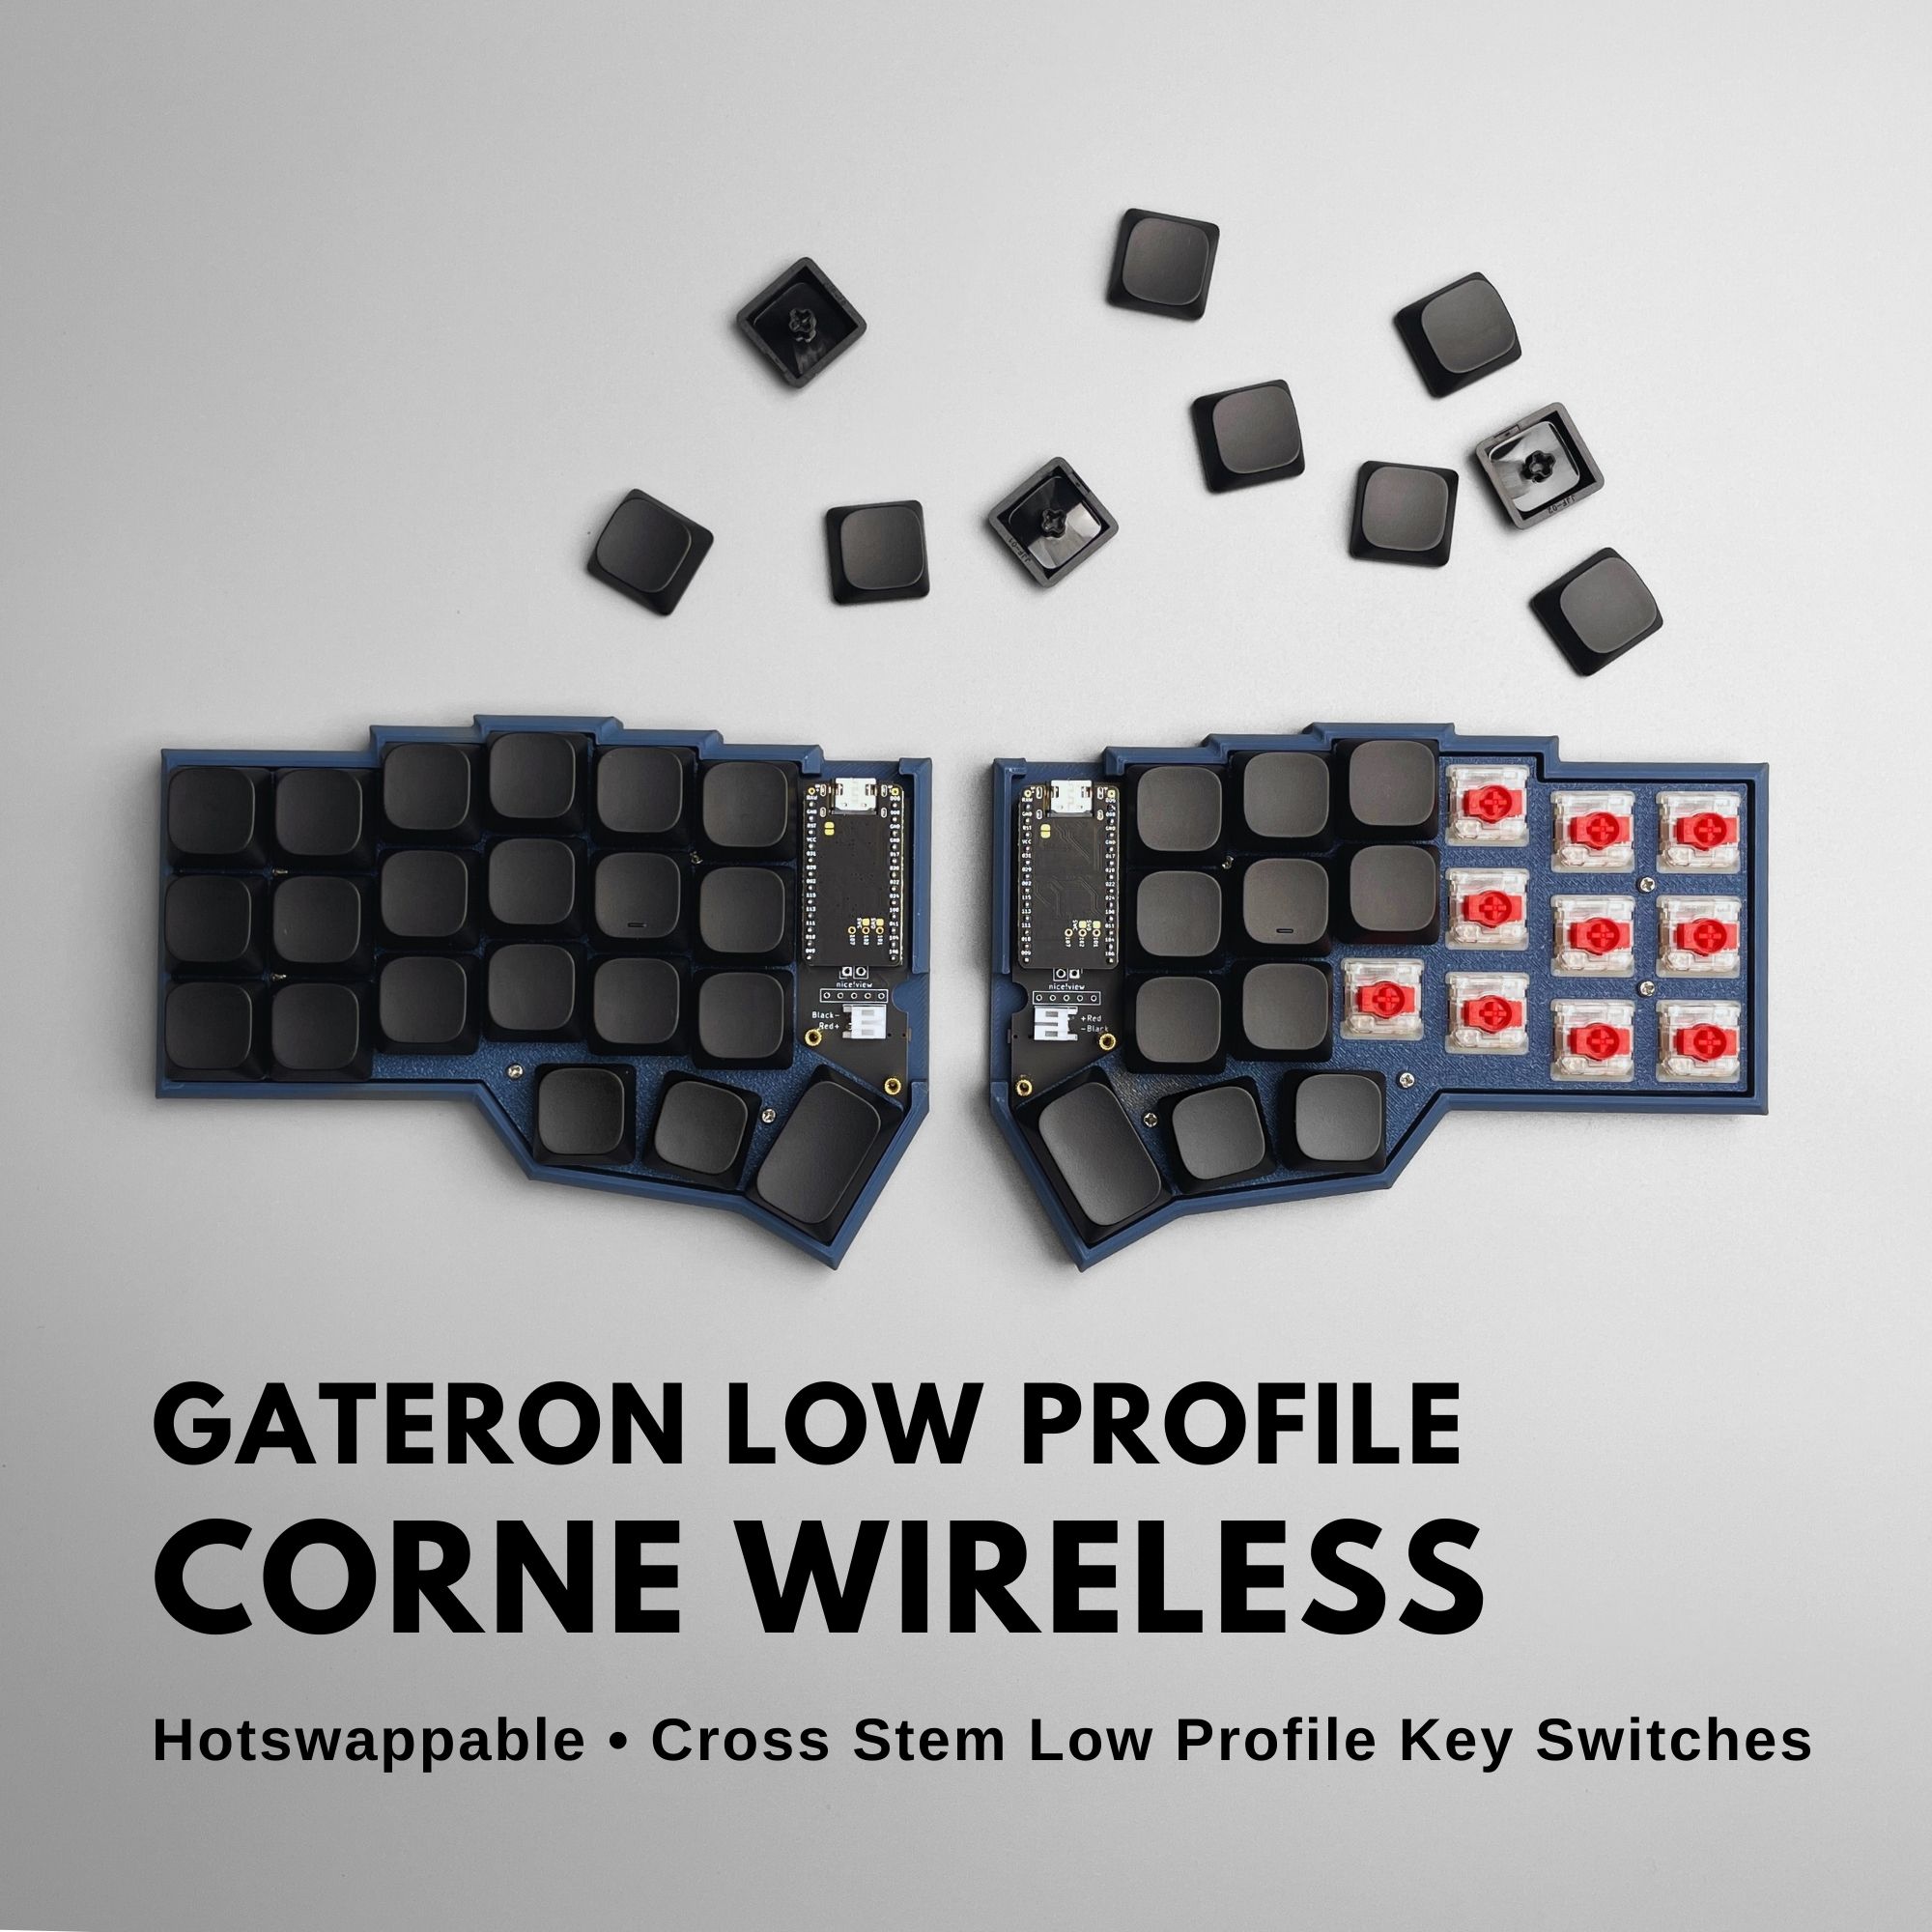 Wireless Corne Gateron Low Profile KS-33 key switches